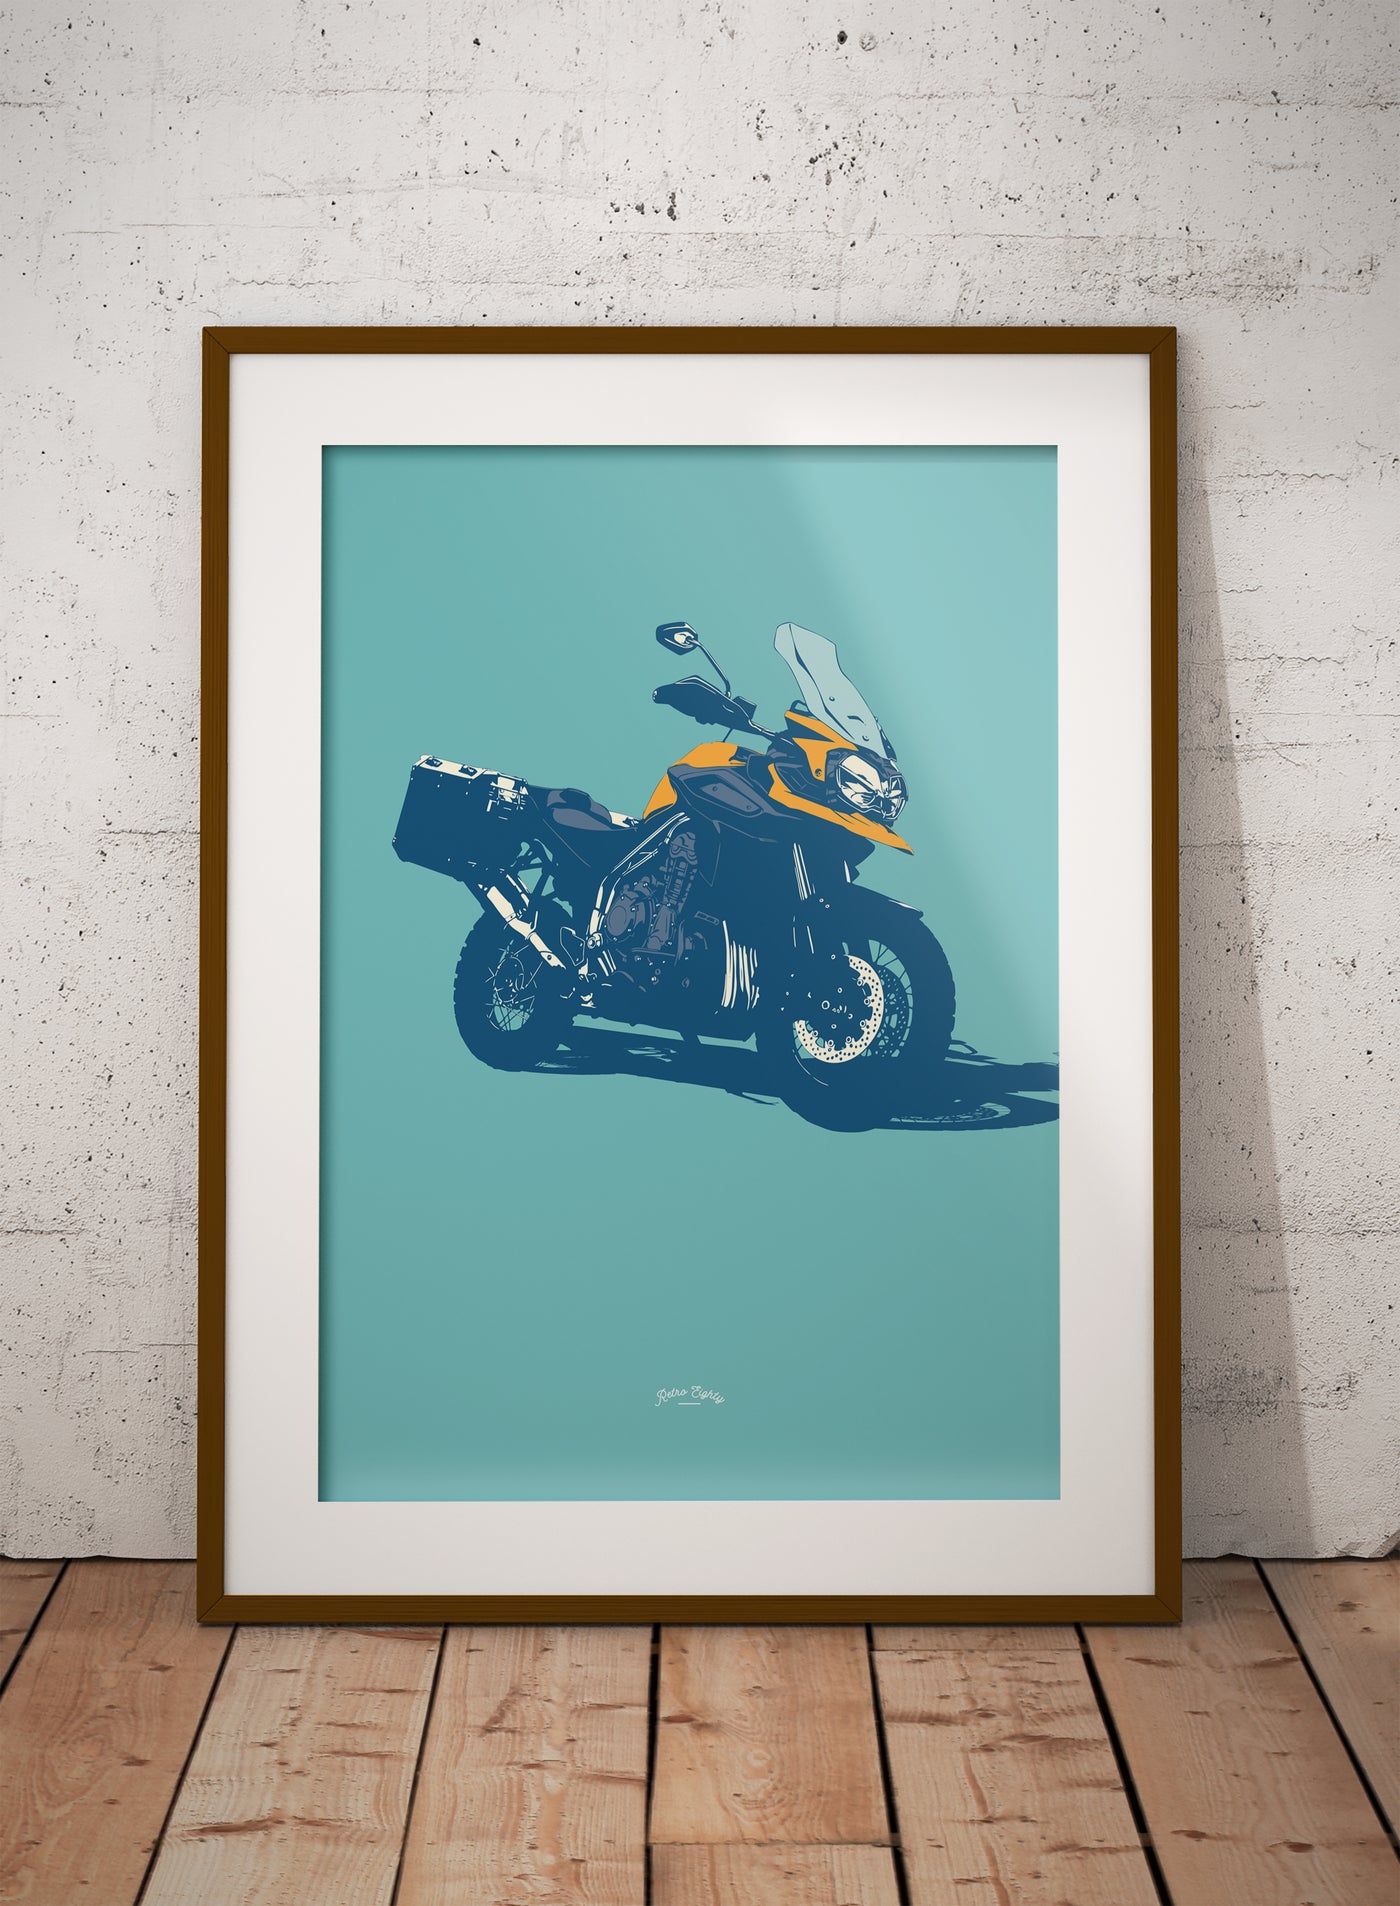 Britsh Adventure Motorcycle print